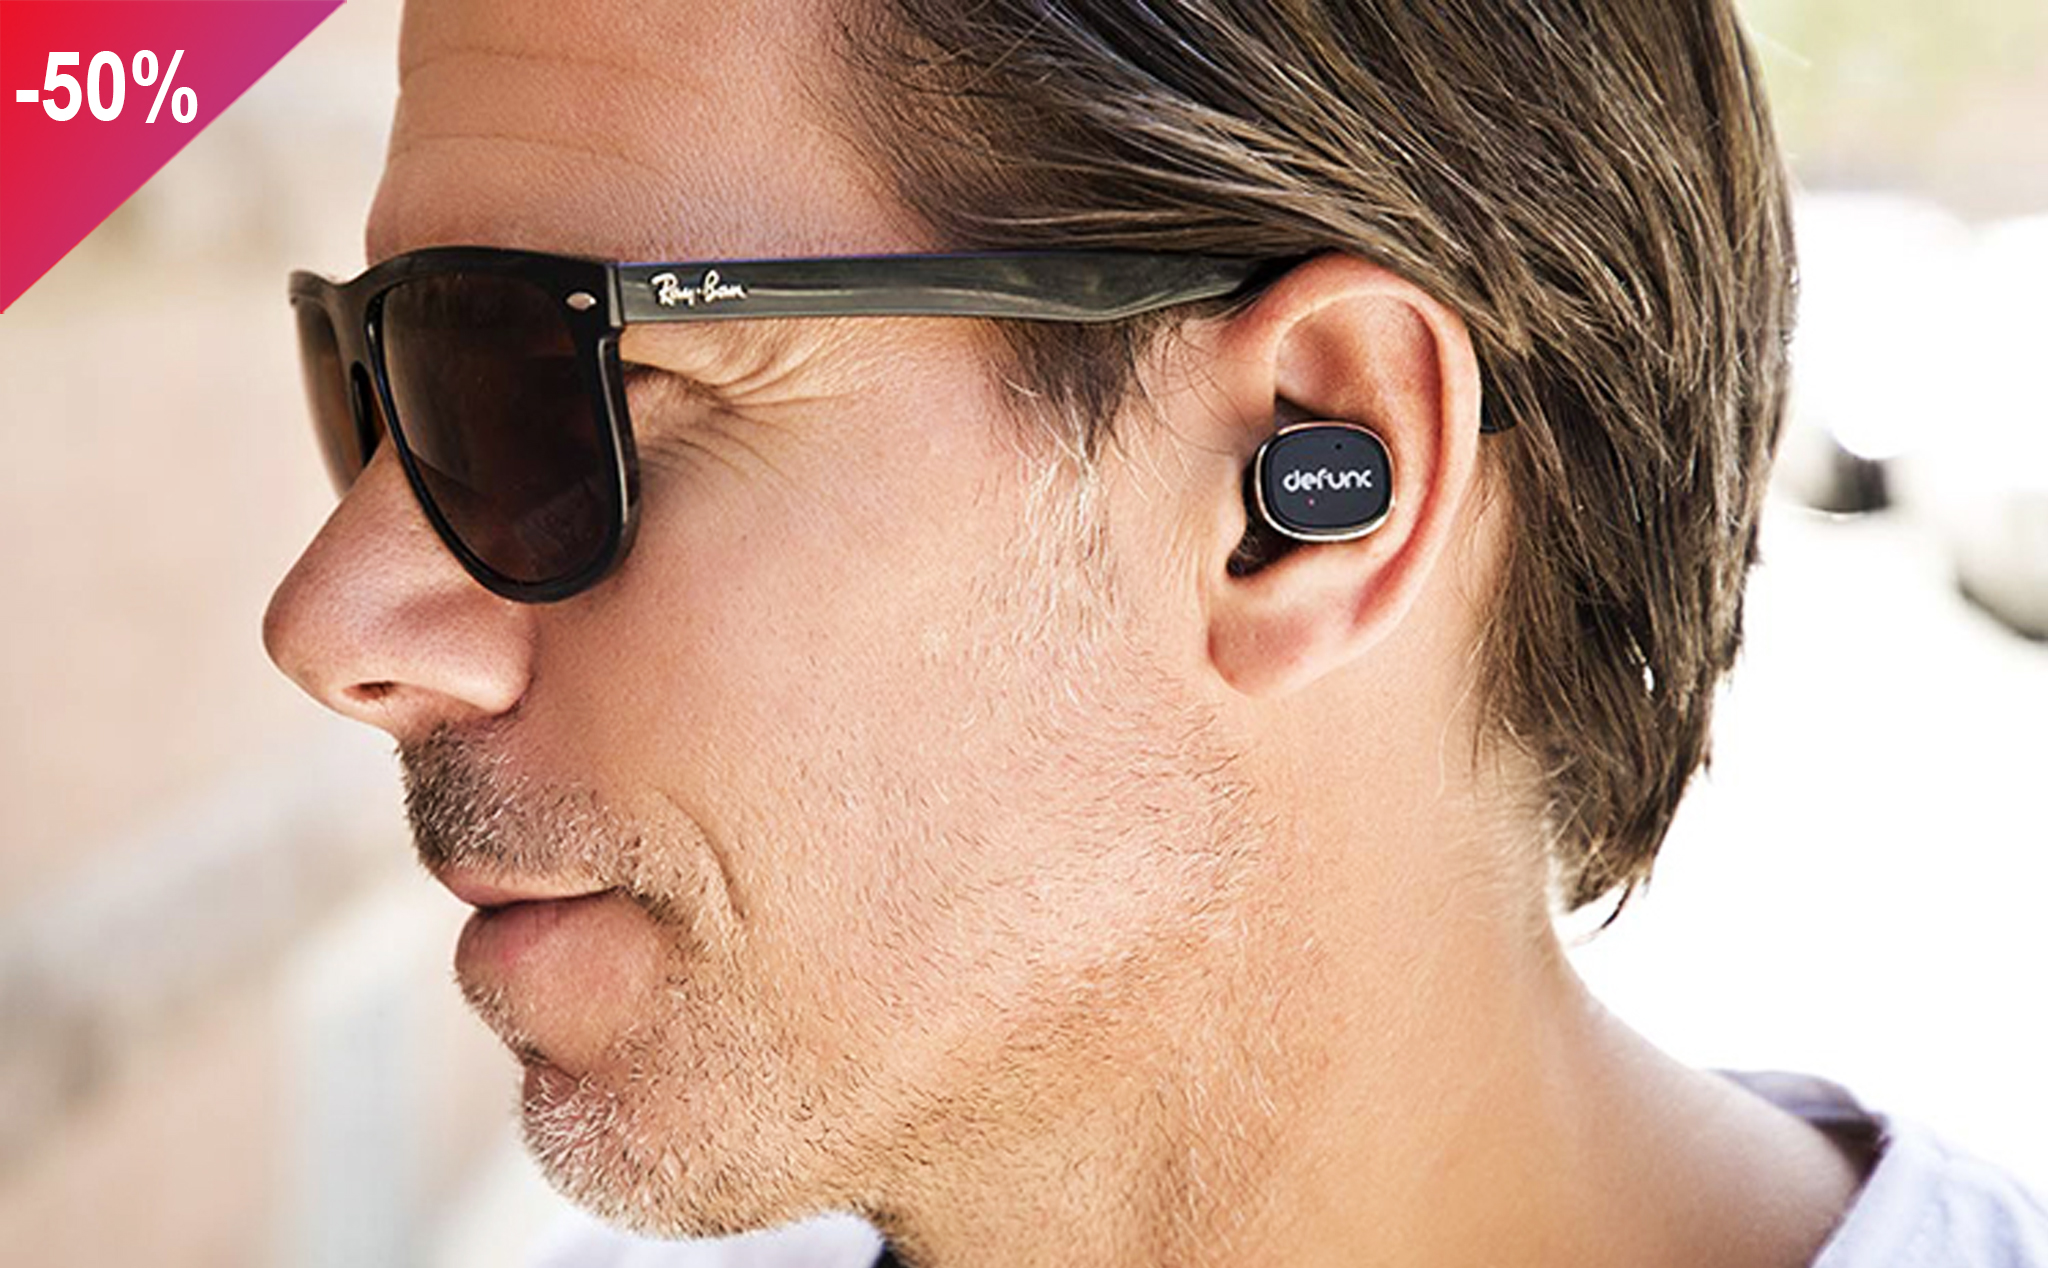 Tai Nghe Bluetooth Thể Thao Defunc TRUE Earbud True Wireless chỉ còn 890.000đ